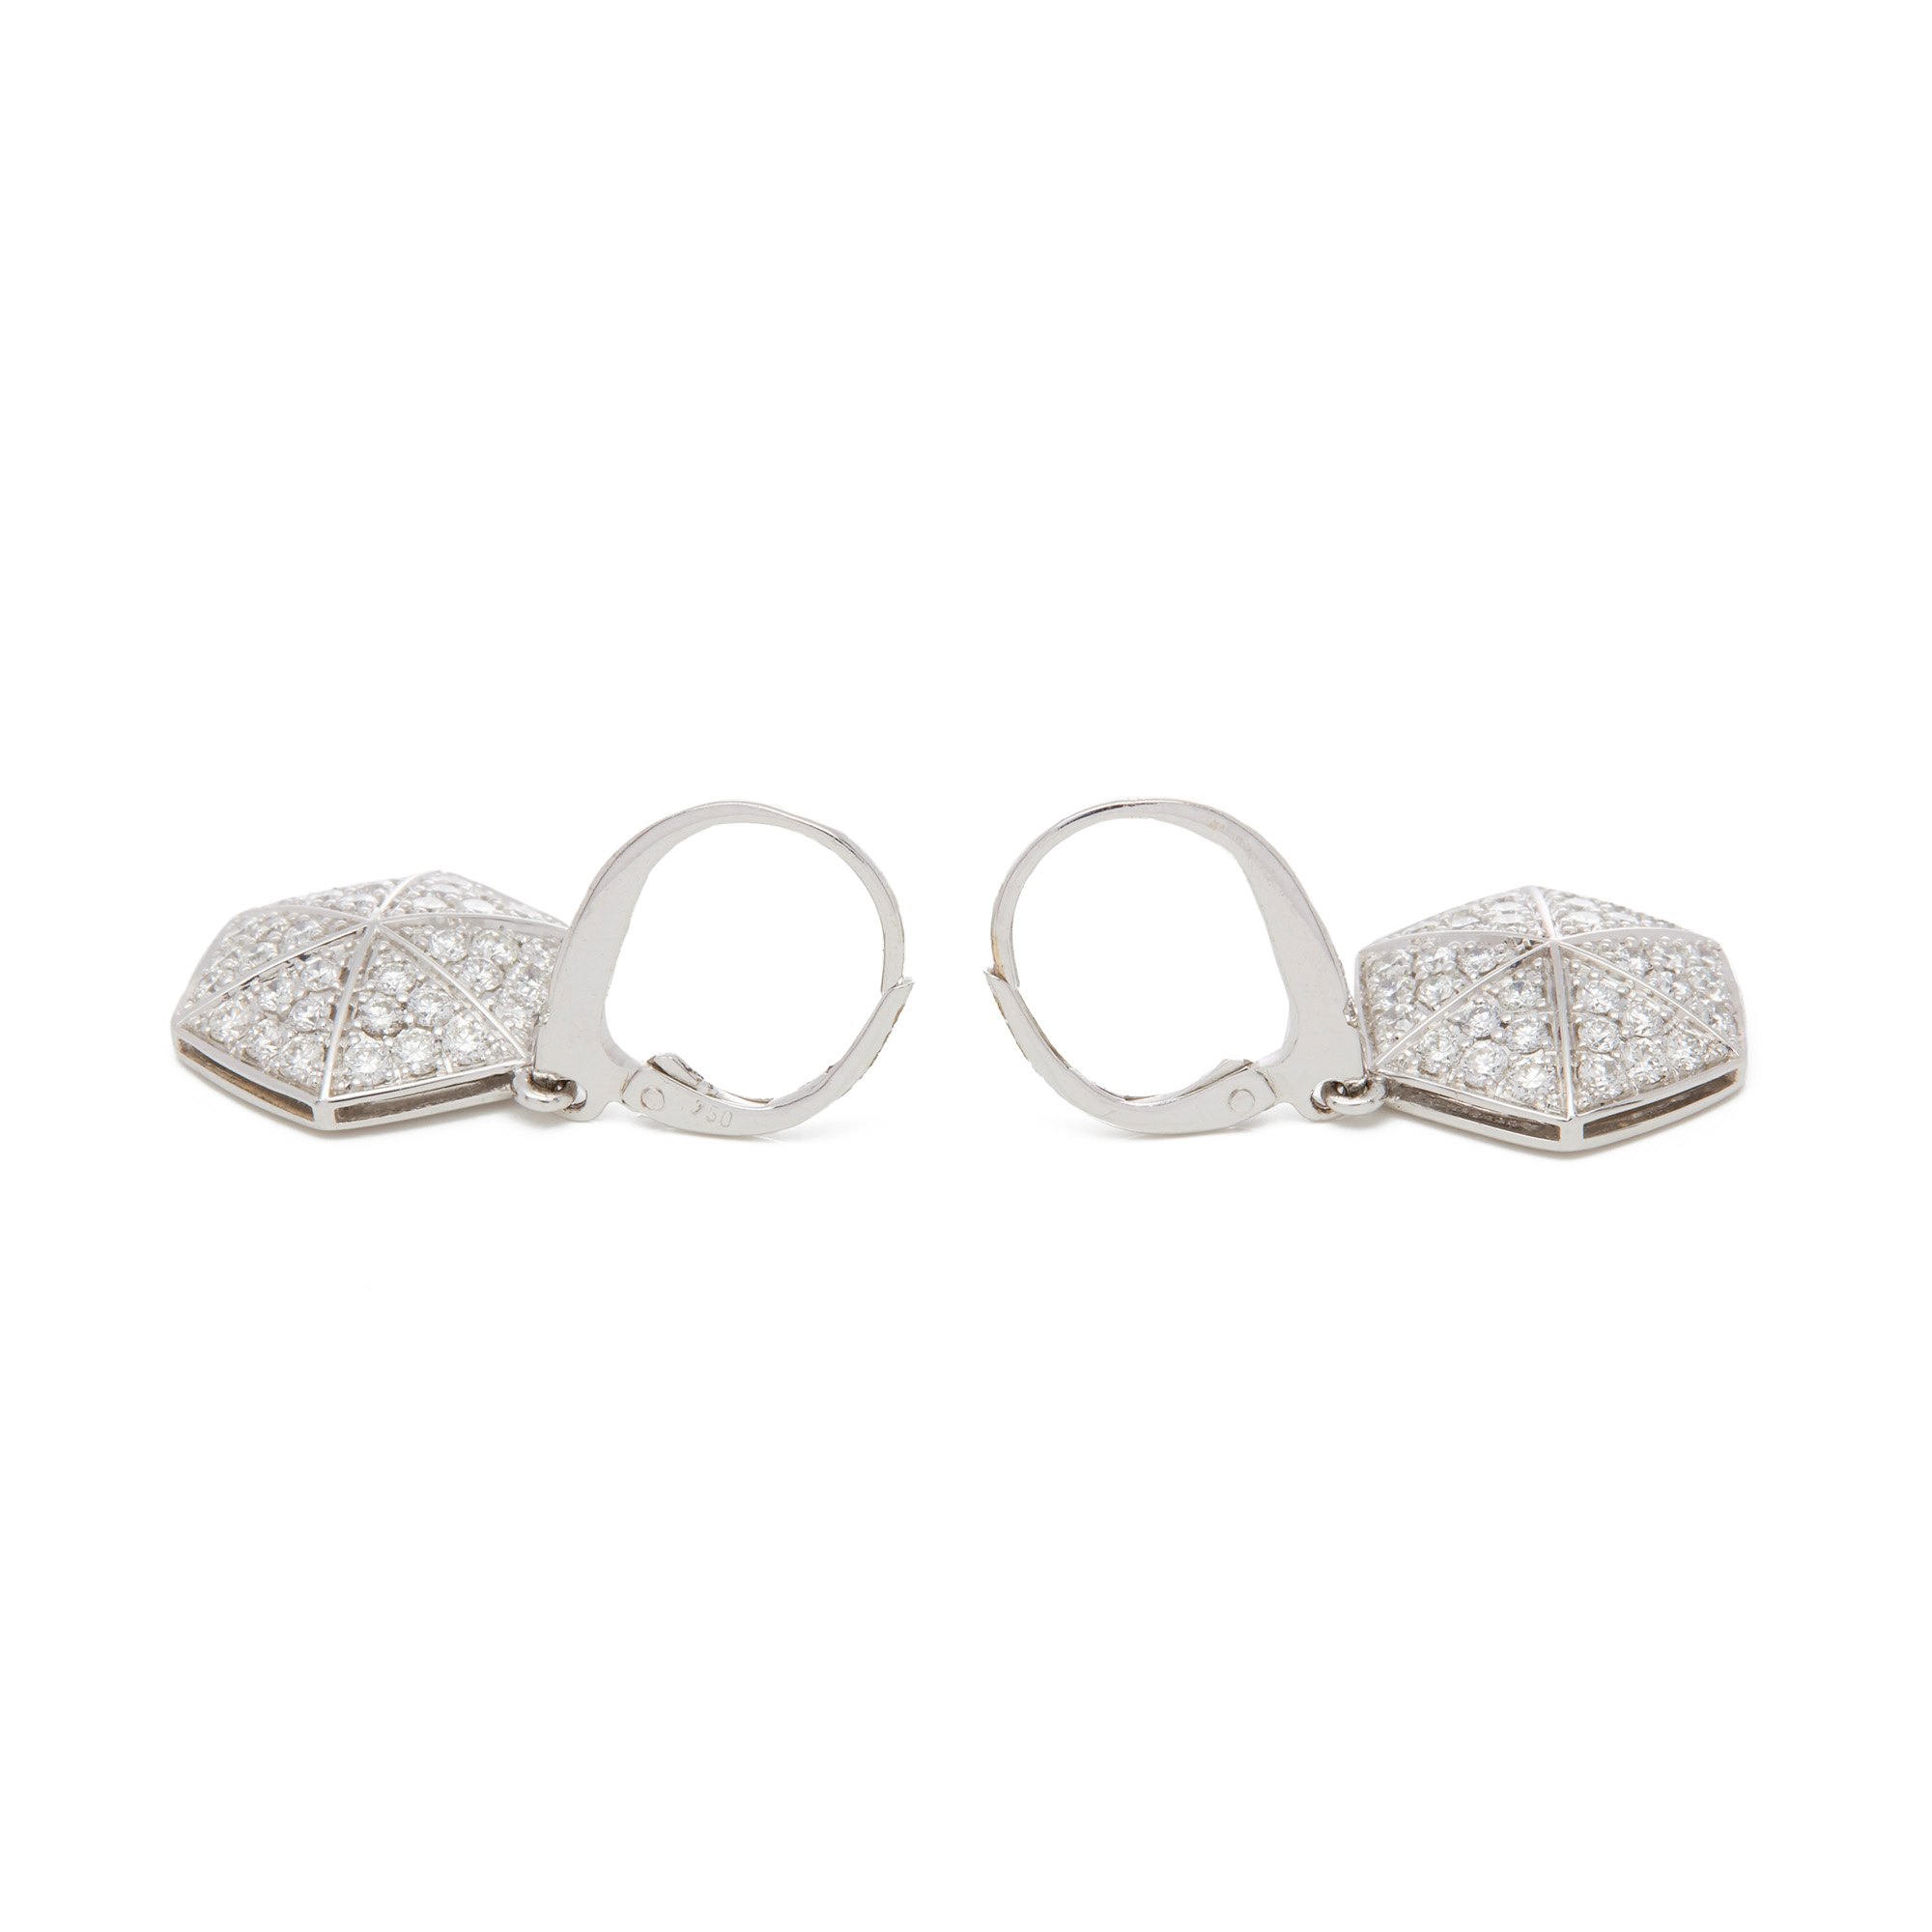 Stephen Webster 18k White Gold Full Pave Diamond Deco Earrings